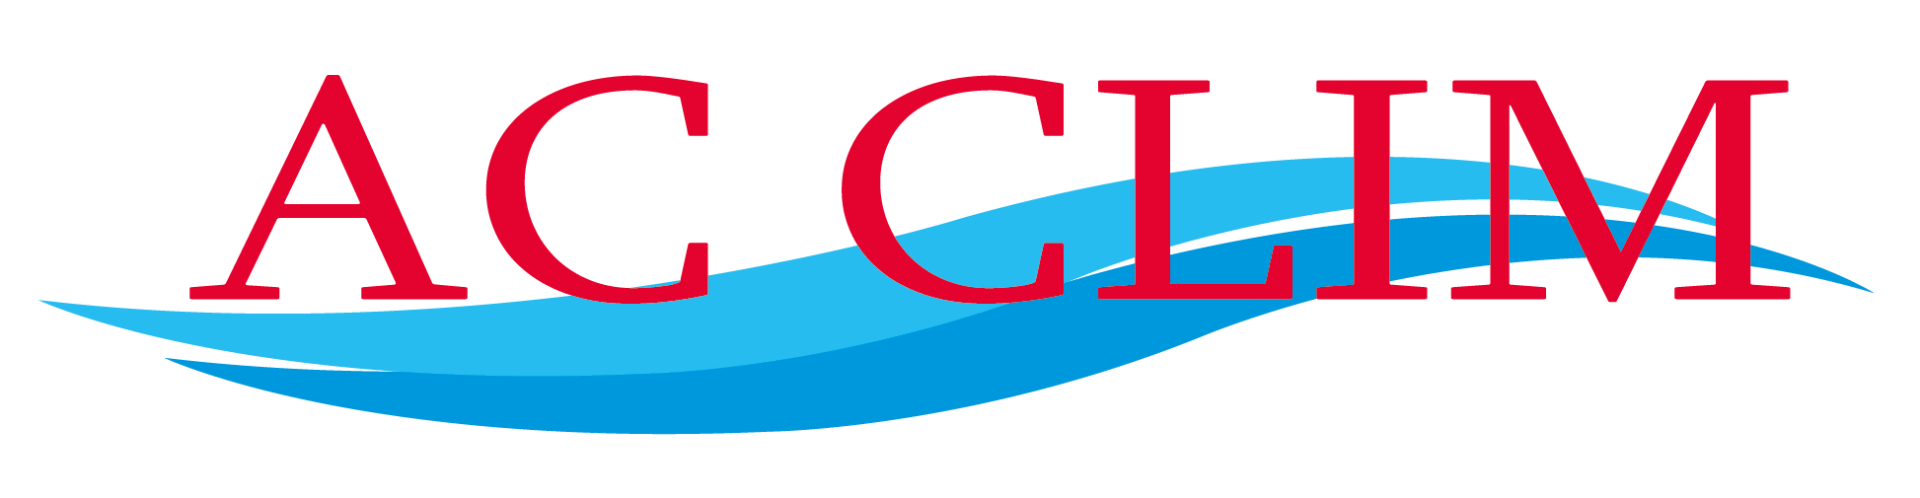 Logo AC Clim